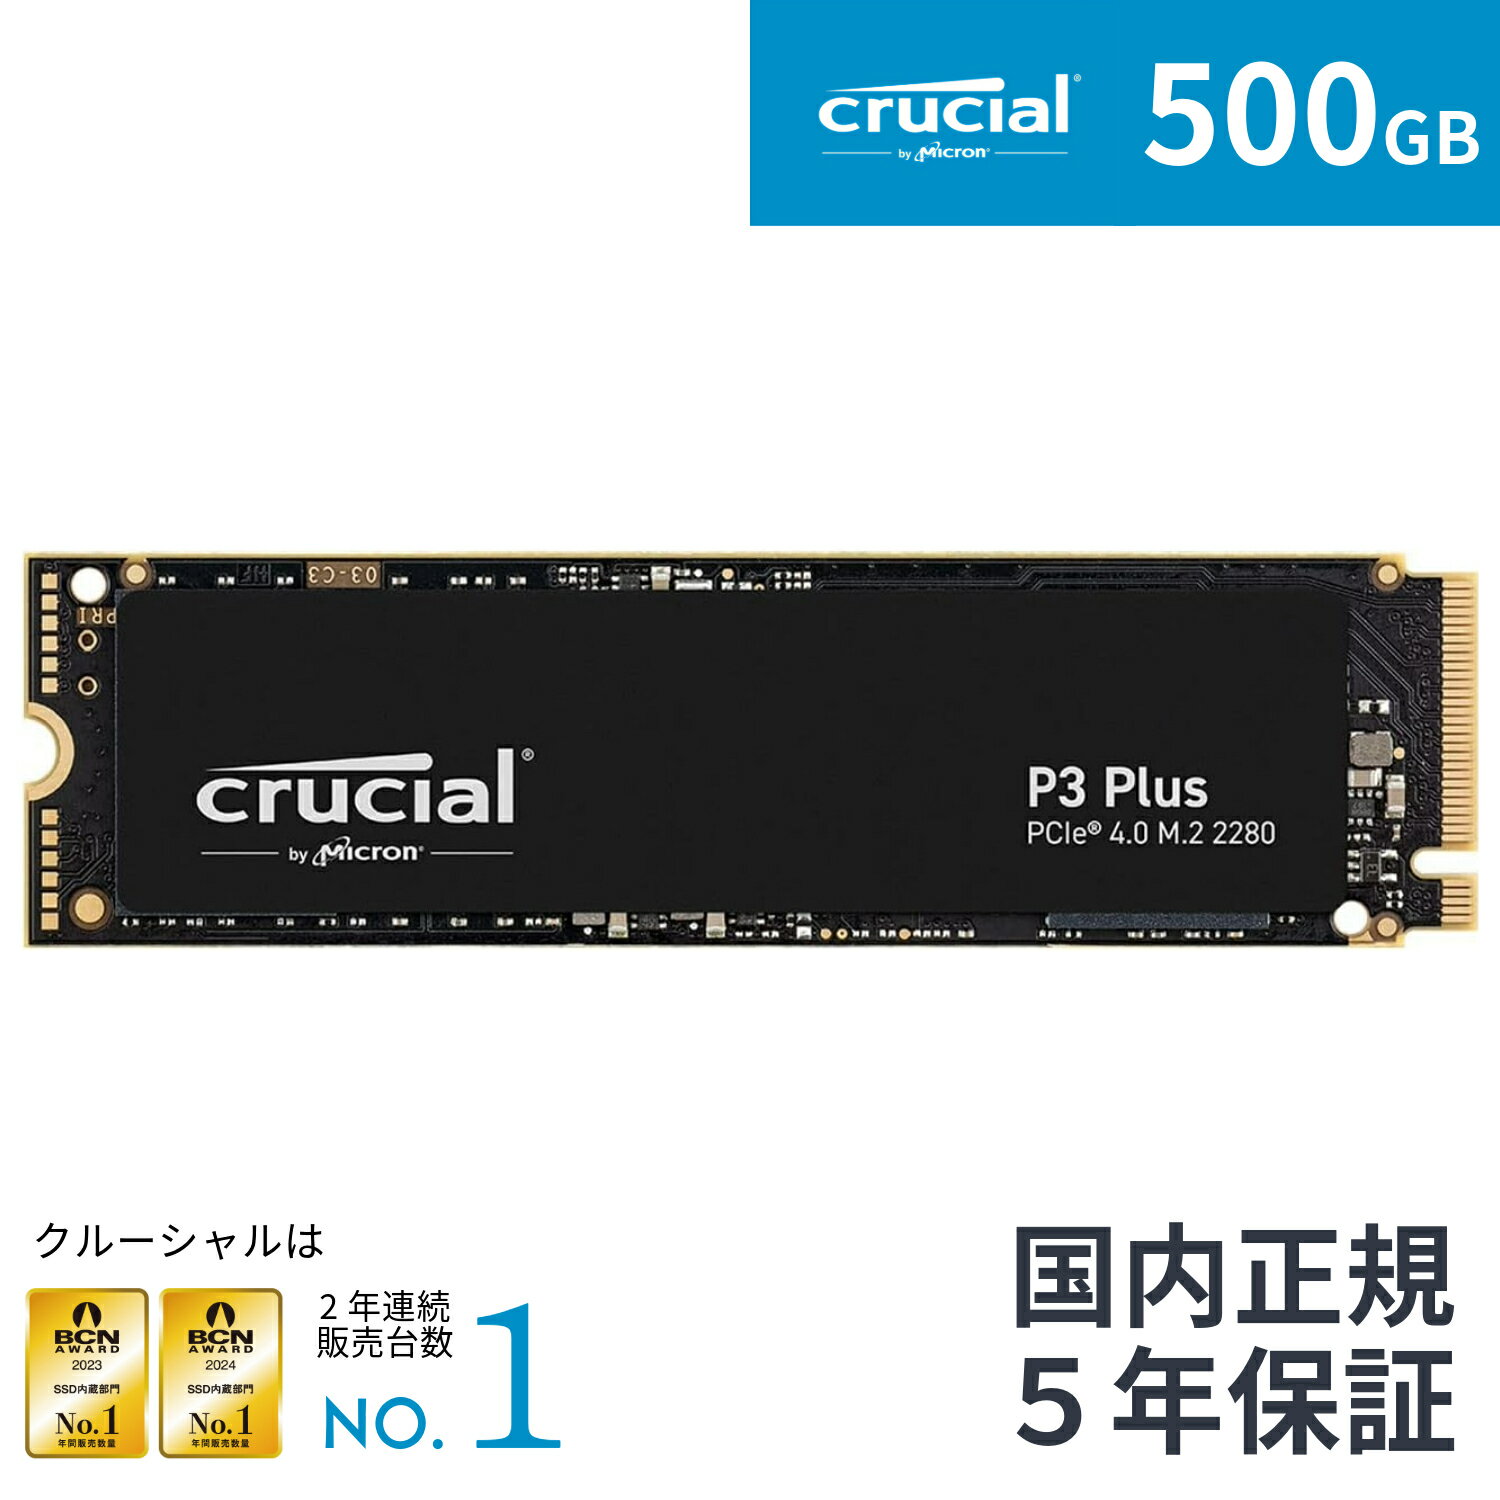 【国内正規流通品】Crucial クルーシャル P3plus 500GB 3D NAND NVMe PCIe4.0 M.2 SSD 最大5000MB/秒 CT500P3PSSD8JP…